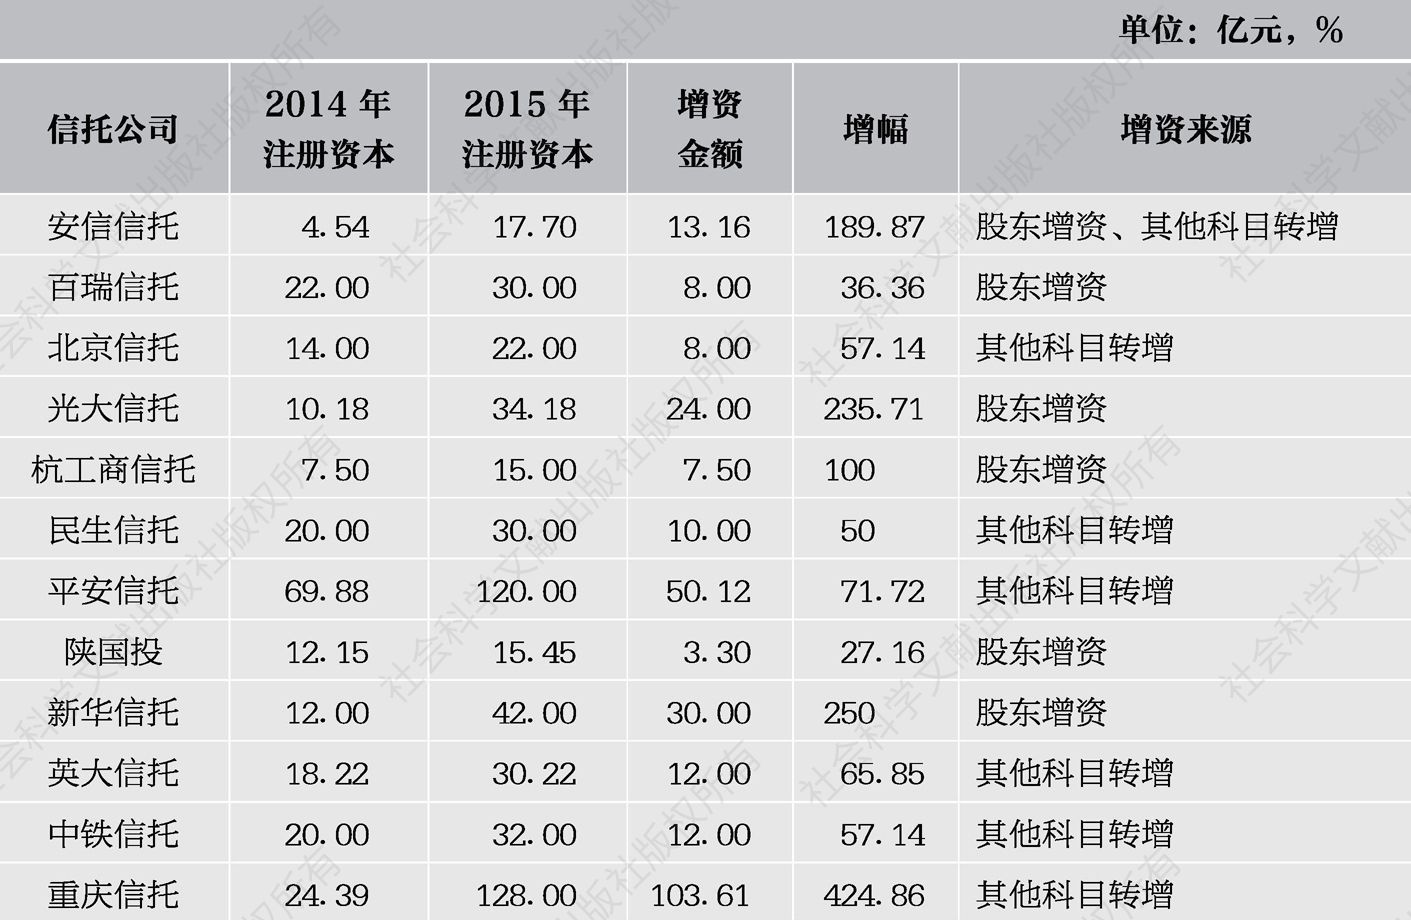 表1 2015年信托公司增资情况